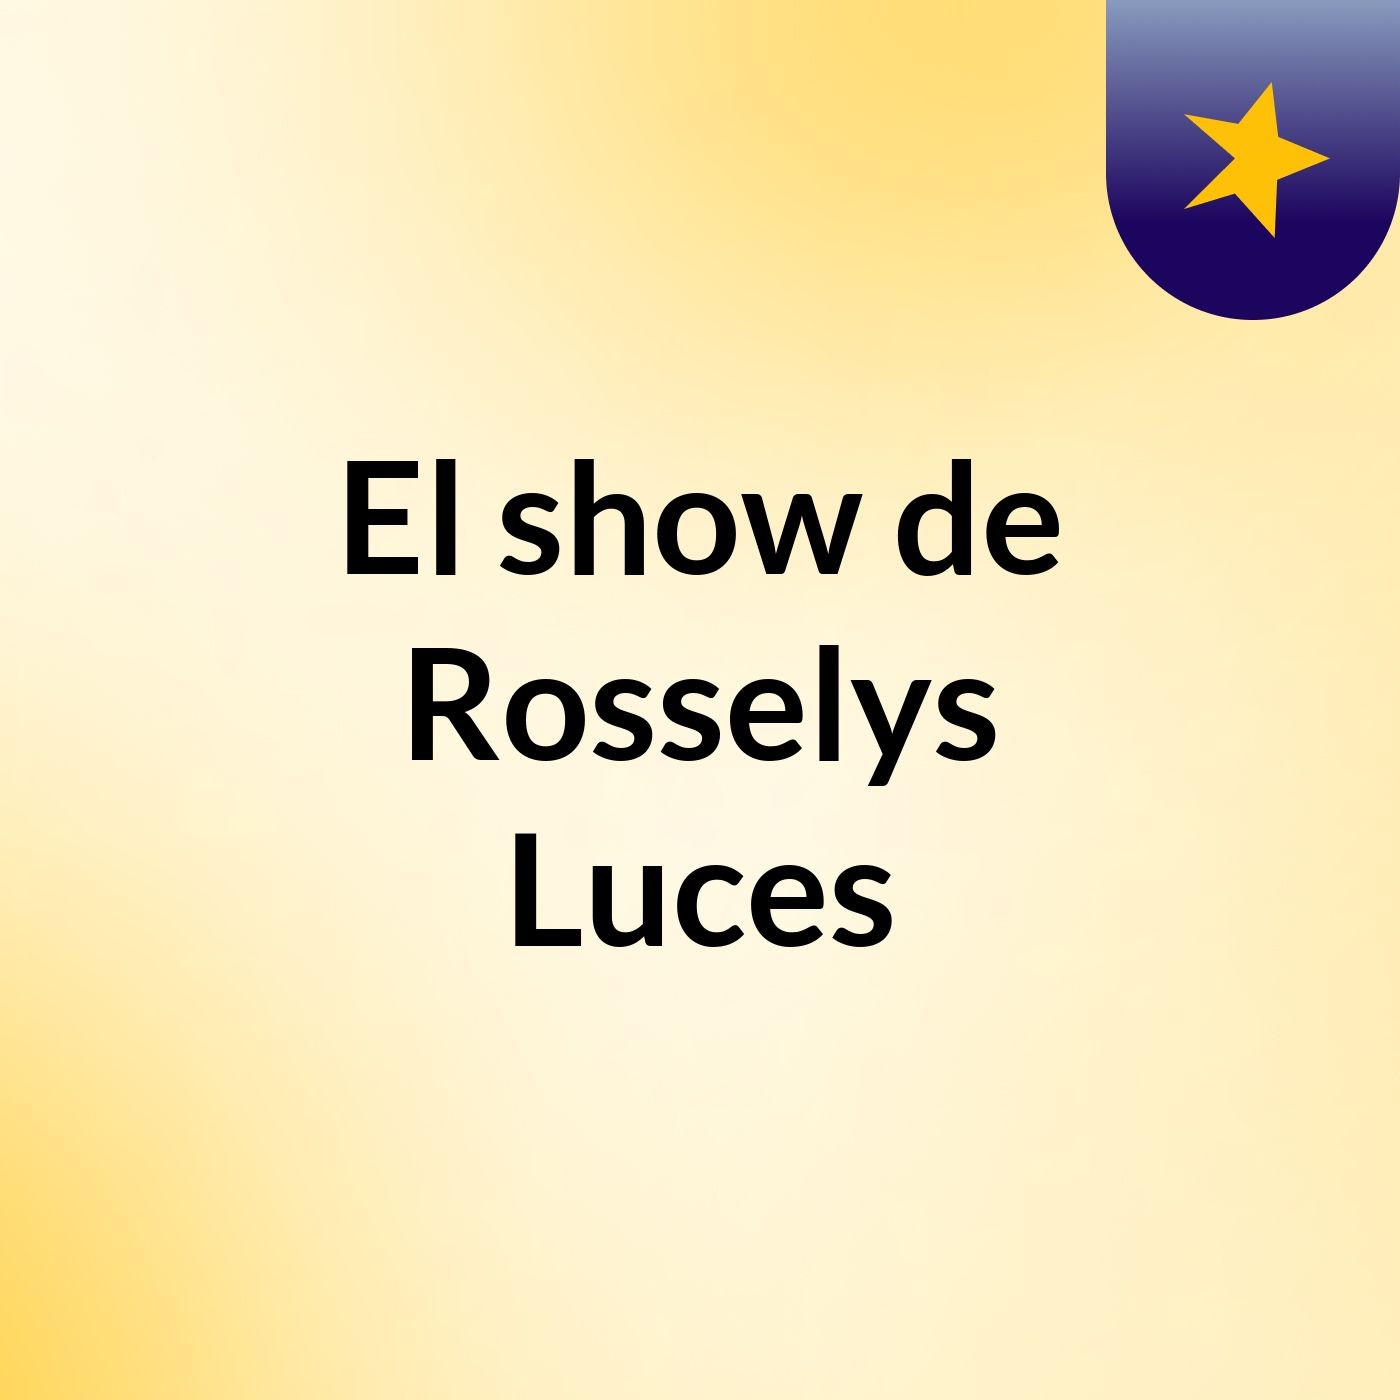 El show de Rosselys Luces